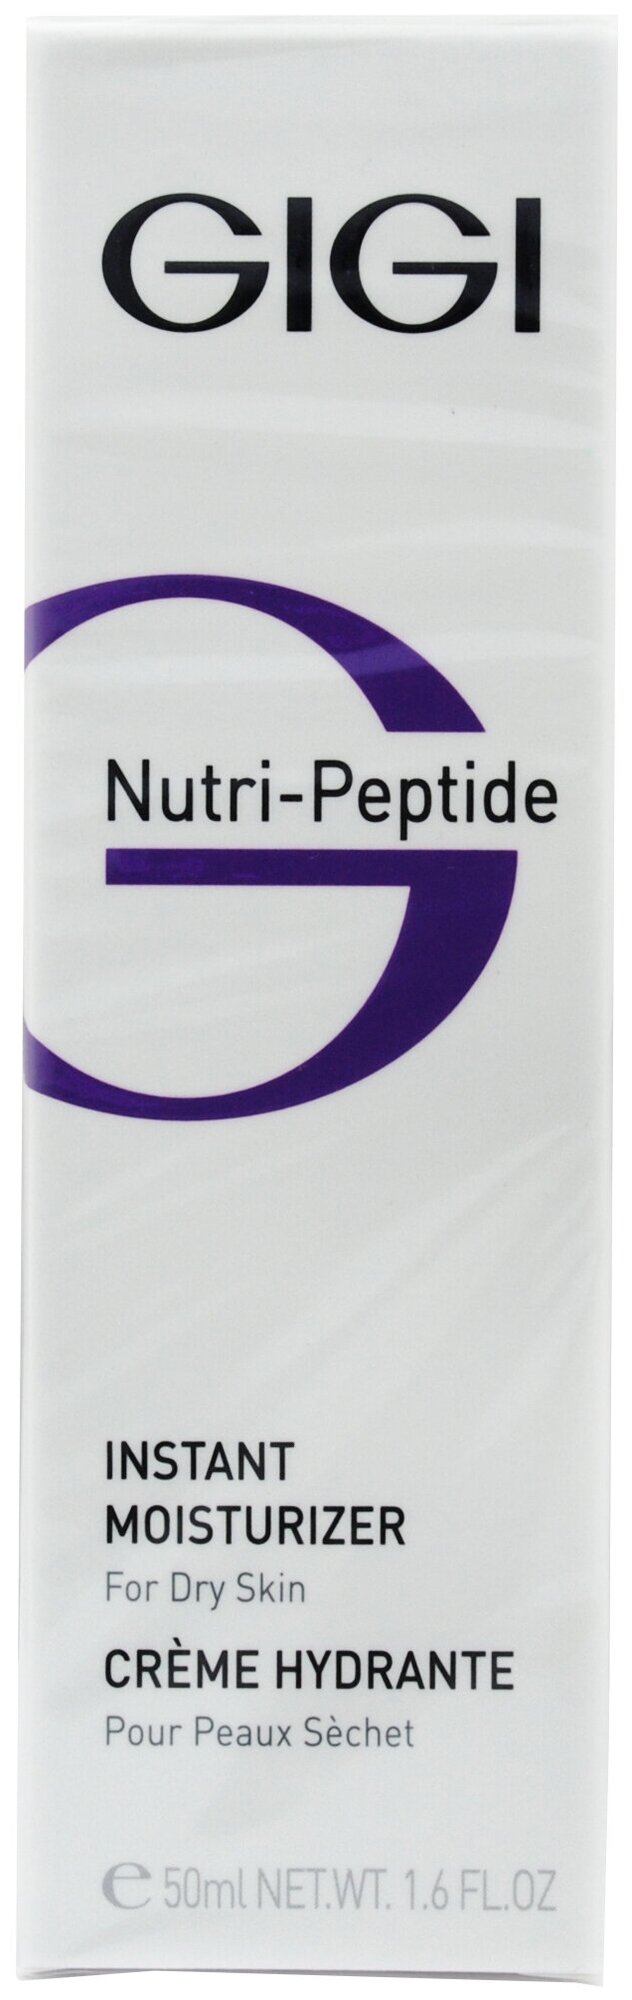 Пептидный крем для сухой кожи лица GiGi Nutri-Peptide Instant Moisturizer 50 мл